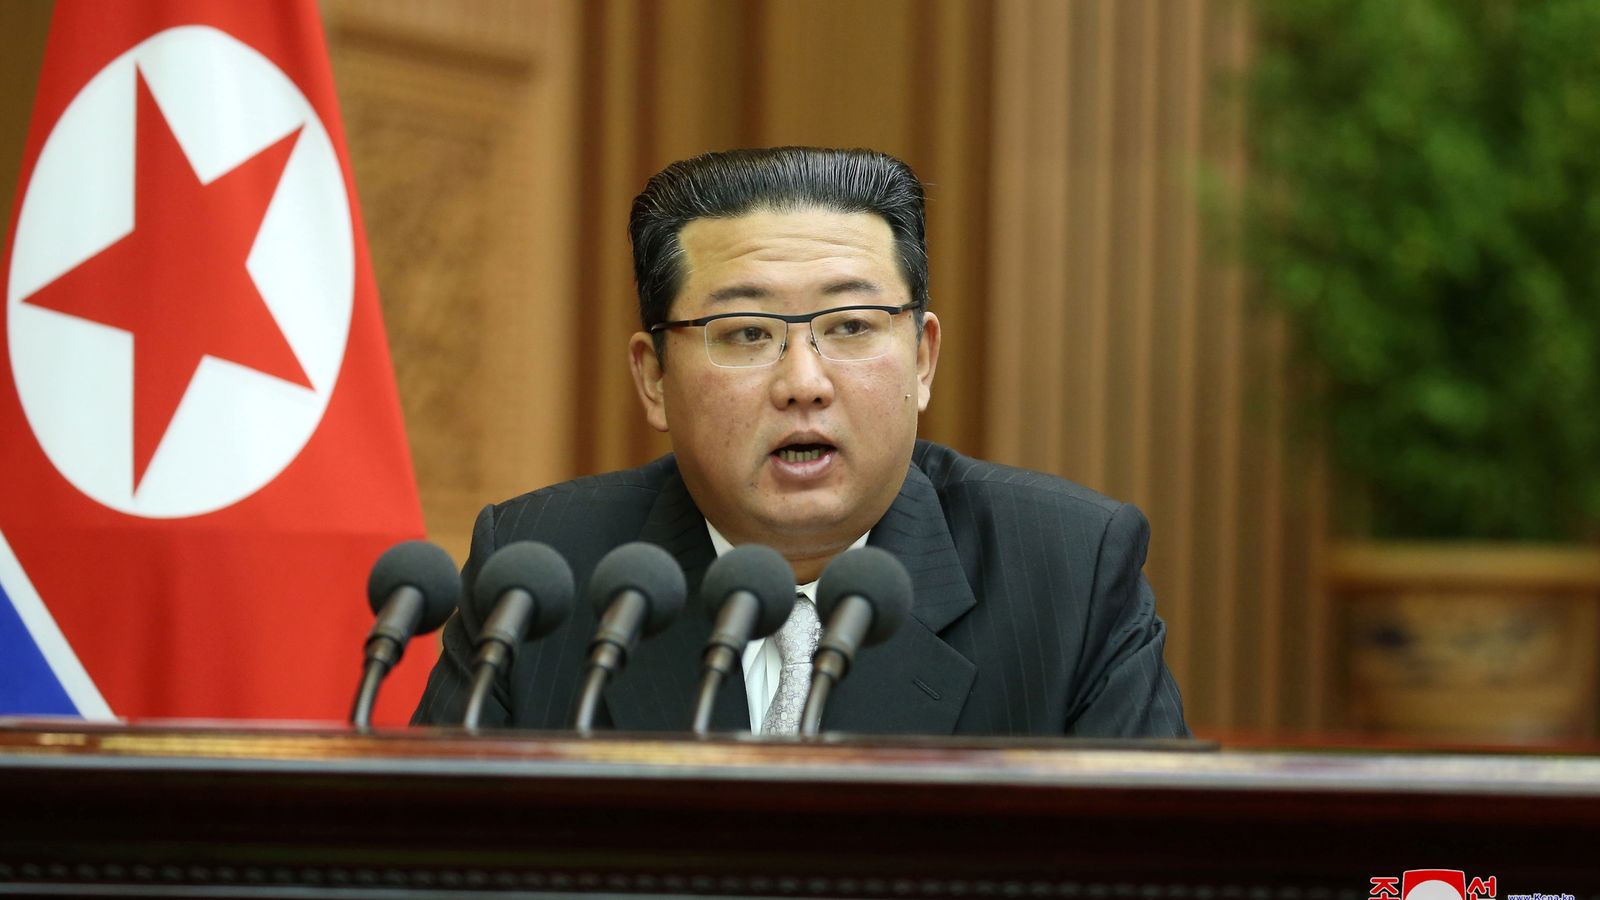 Kim Jong-un calls for restoring hotlines across the border between North and South Korea